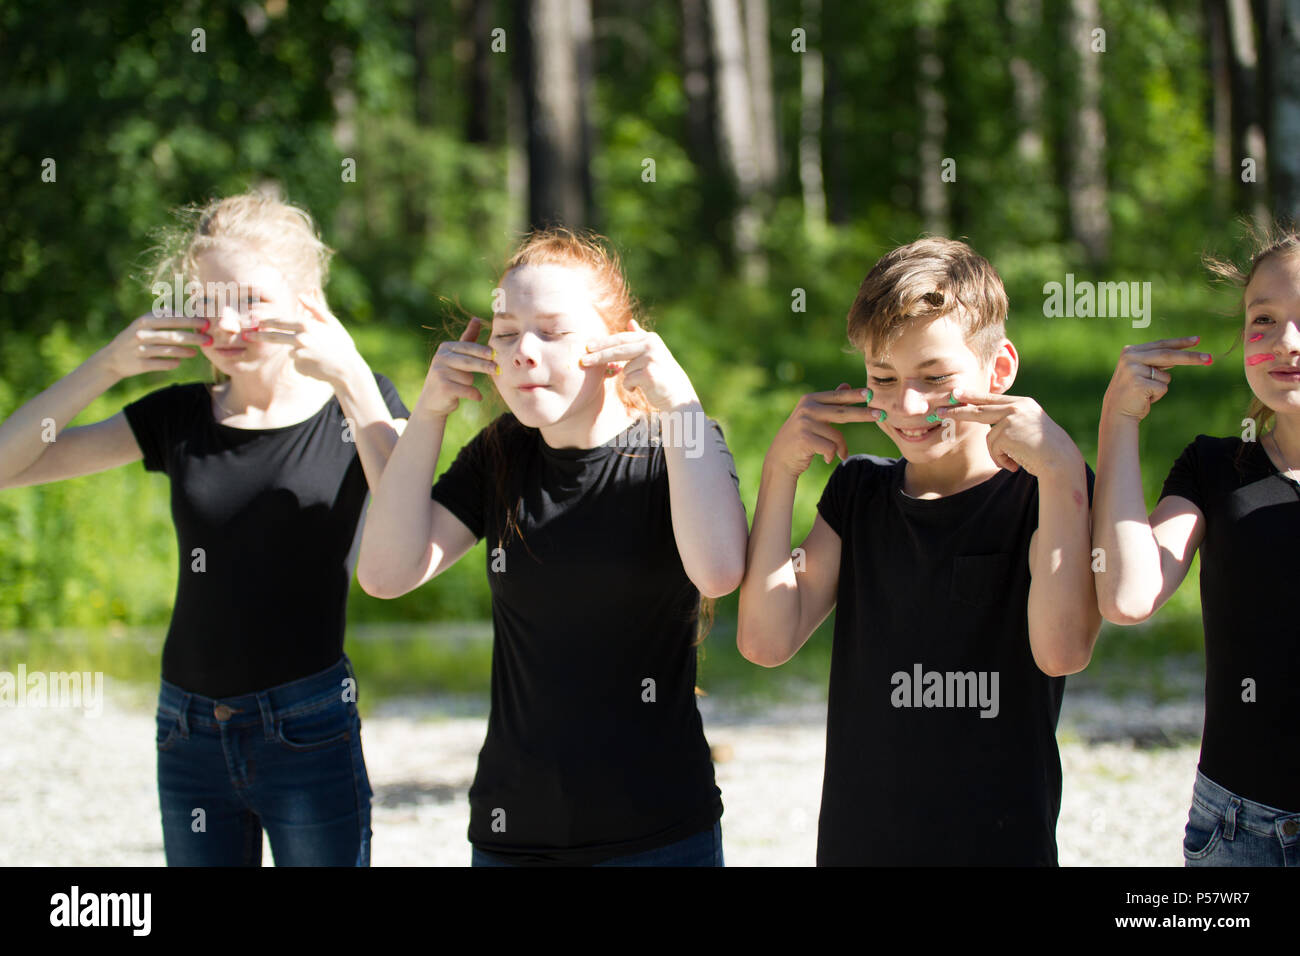 Gruppe von Teenagern in schwarzen T-Shirts malen ihre Gesichter Spaß im Freien an einem sonnigen Tag Stockfoto